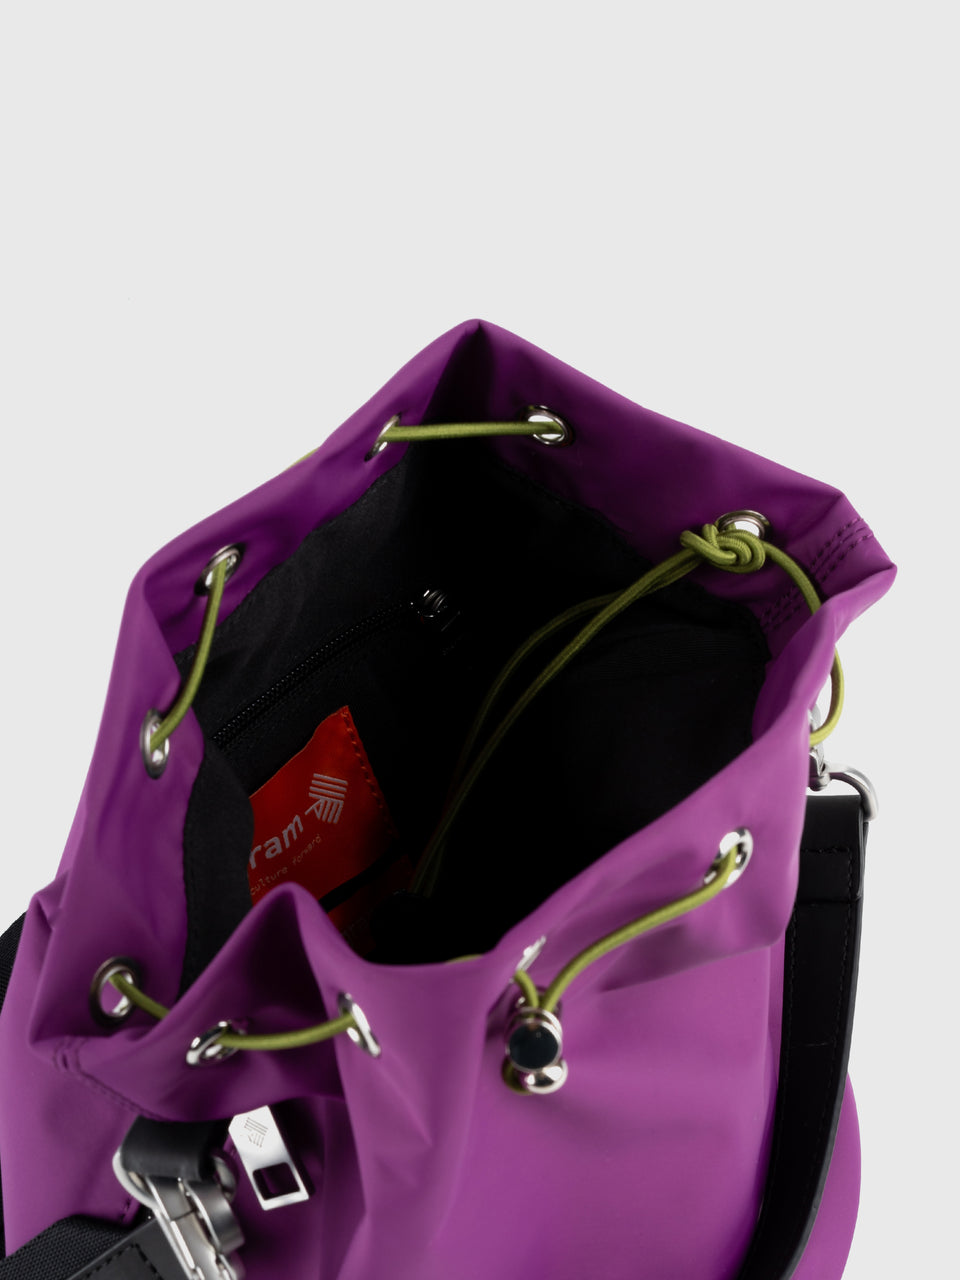 FWRD Renew Prada Tessuto Shoulder Bag in Black